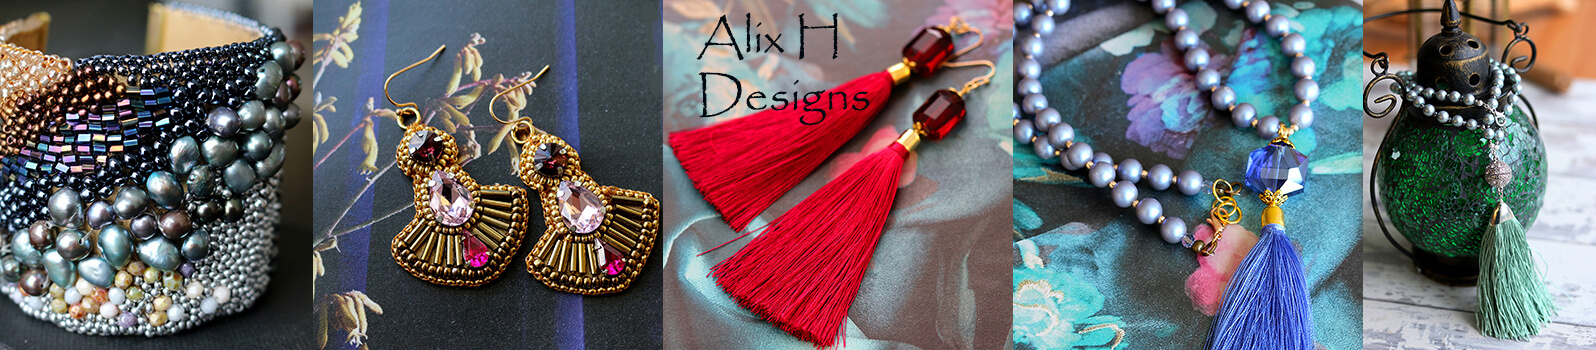 Alix H Designs